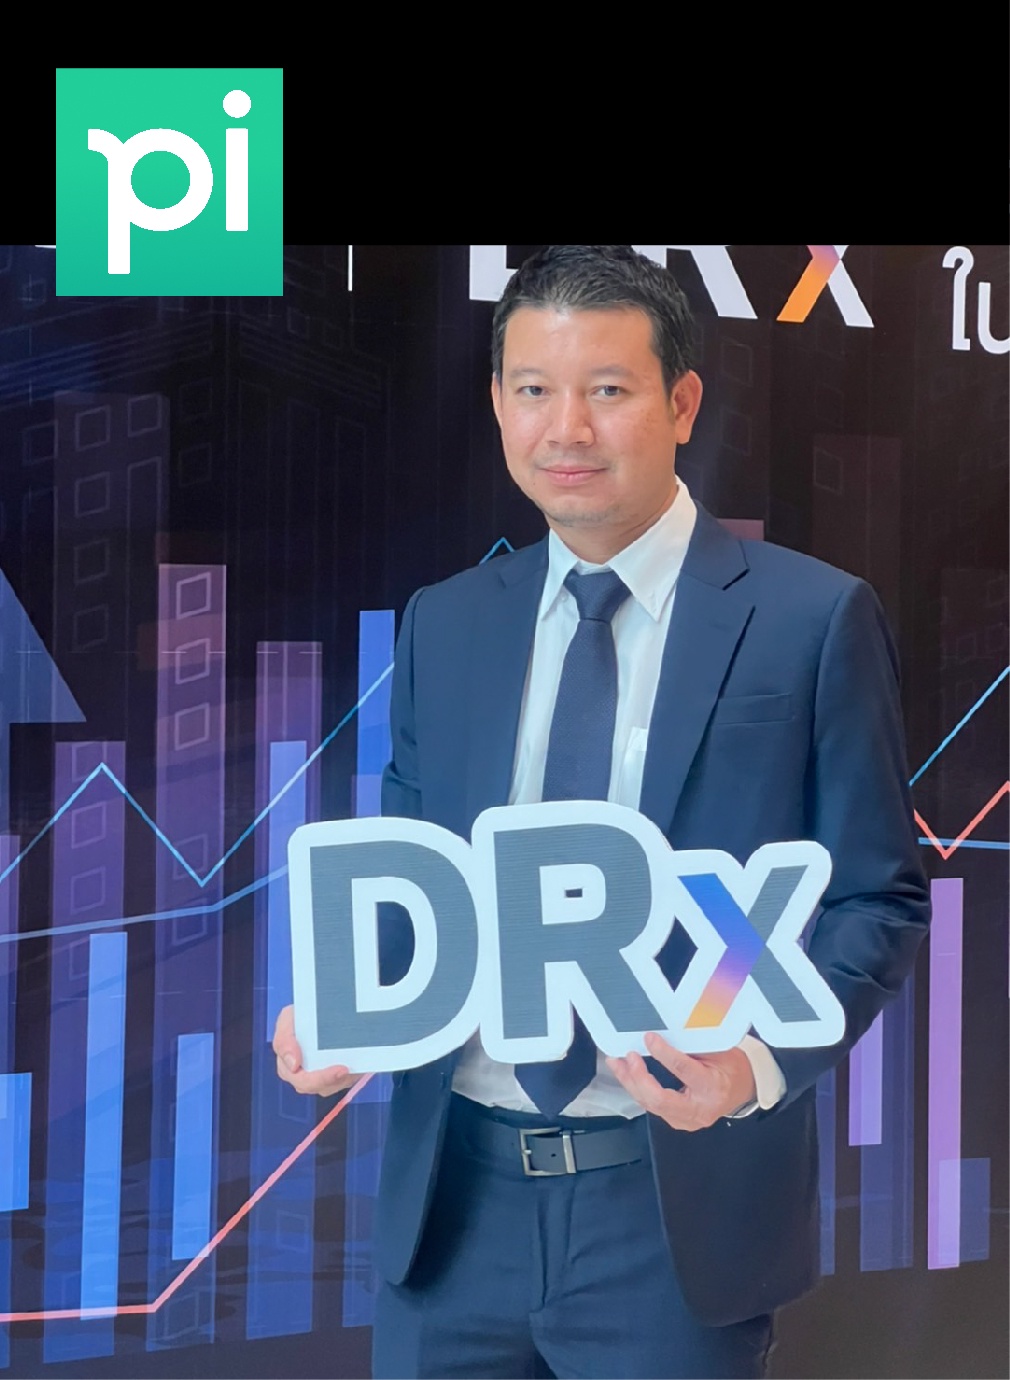 บล.พาย (Pi) รับหน้าที่โบรกเกอร์ ยกทัพร่วมงาน 'DRx ผลิตภัณฑ์ใหม่ตลาดทุนไทย' พร้อมเสนอลงทุนหุ้นต่างประเทศ IPO 29 ก.ย.นี้